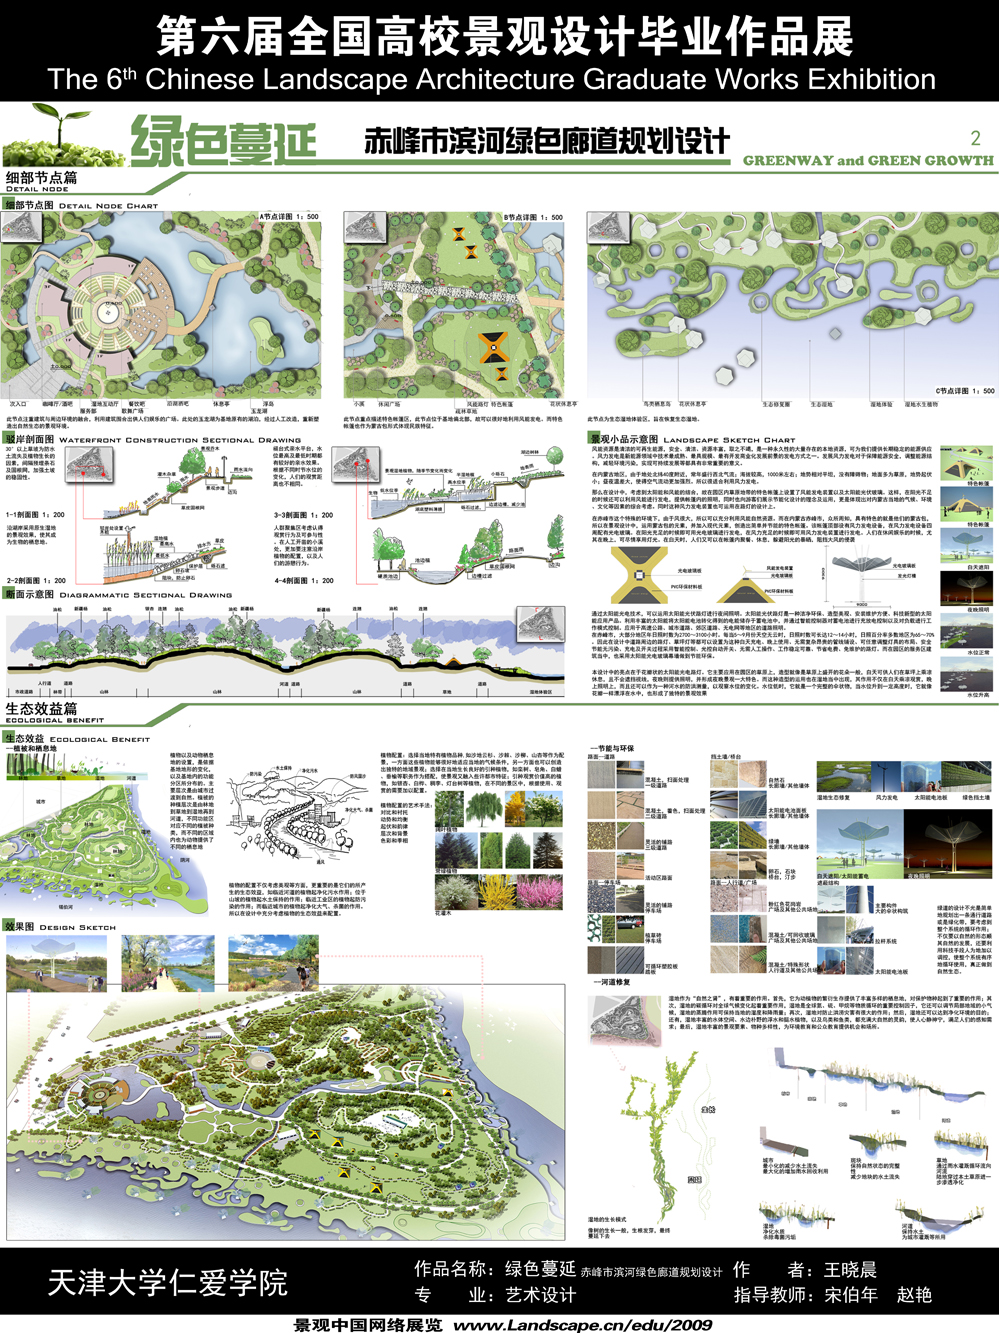 绿色蔓延—赤峰市滨河绿色廊道景观设计-2